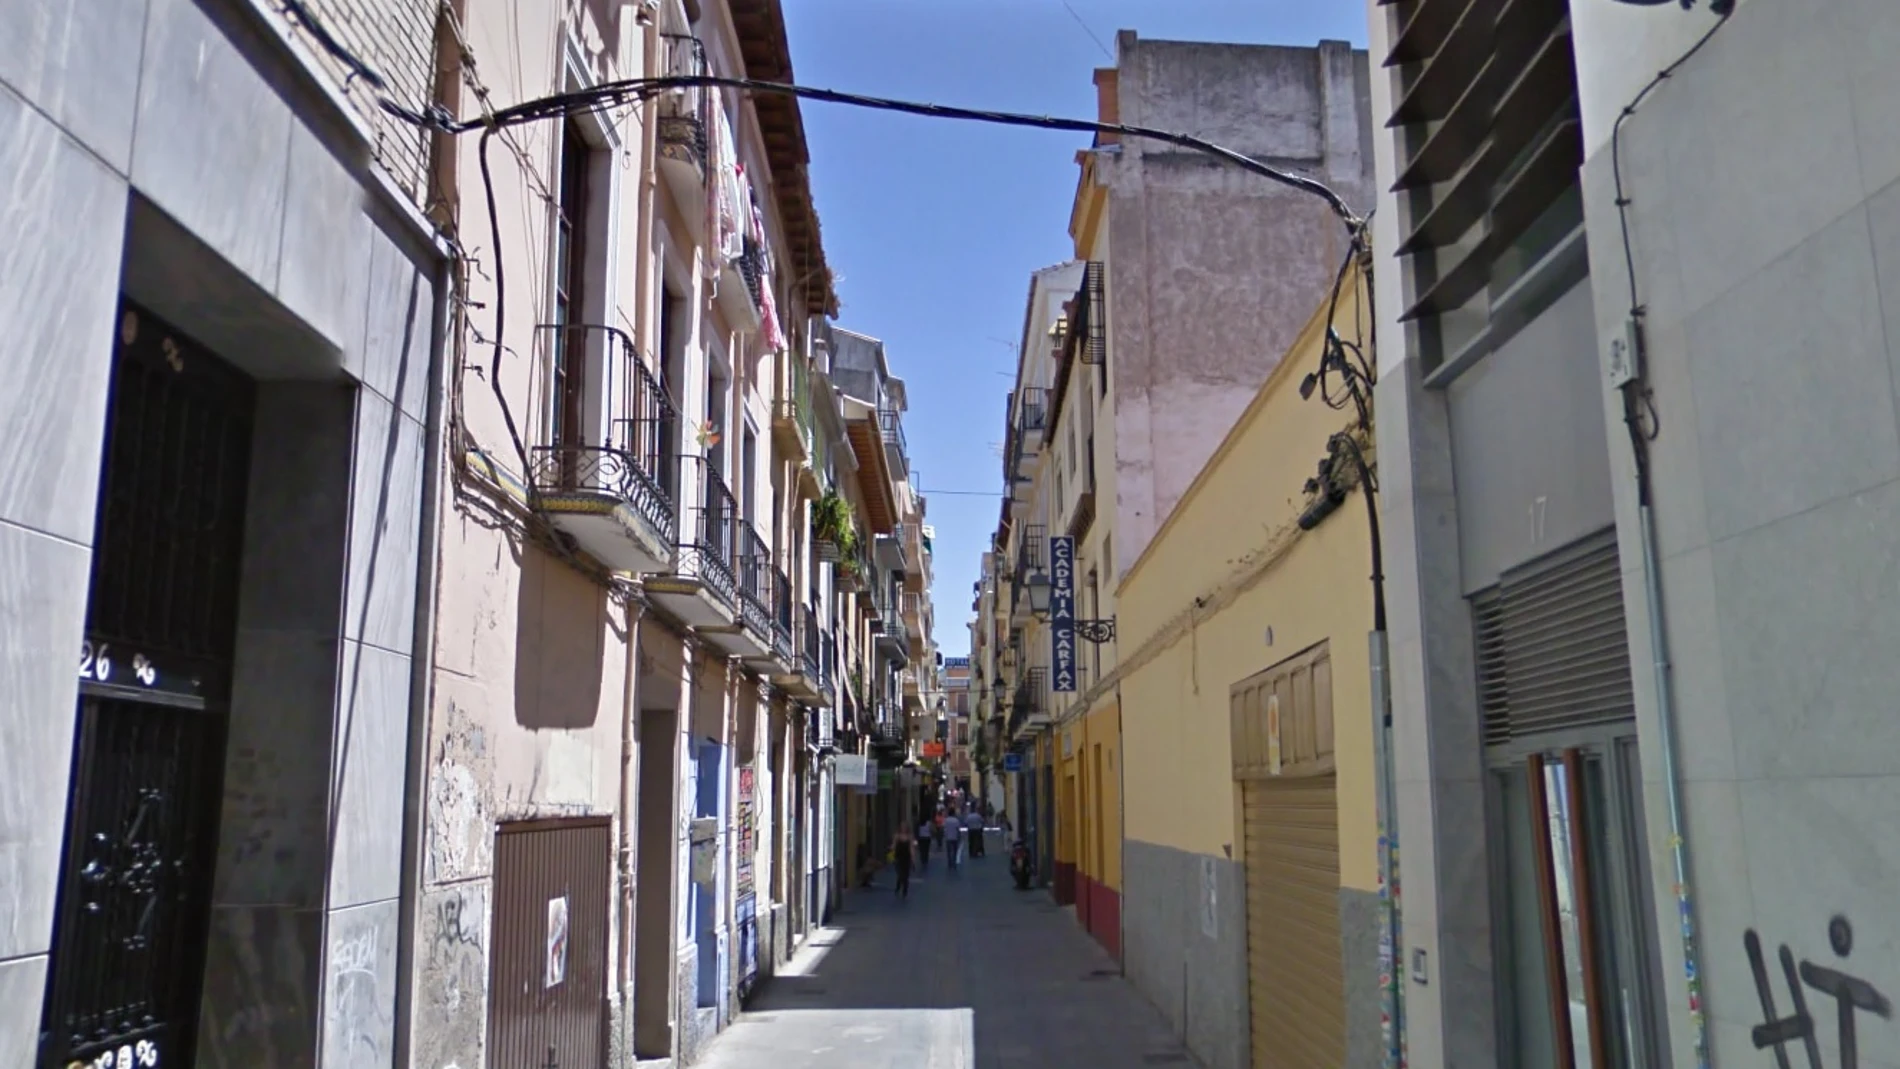 La calle en la que ocurrieron los hechos en el centro de Granada